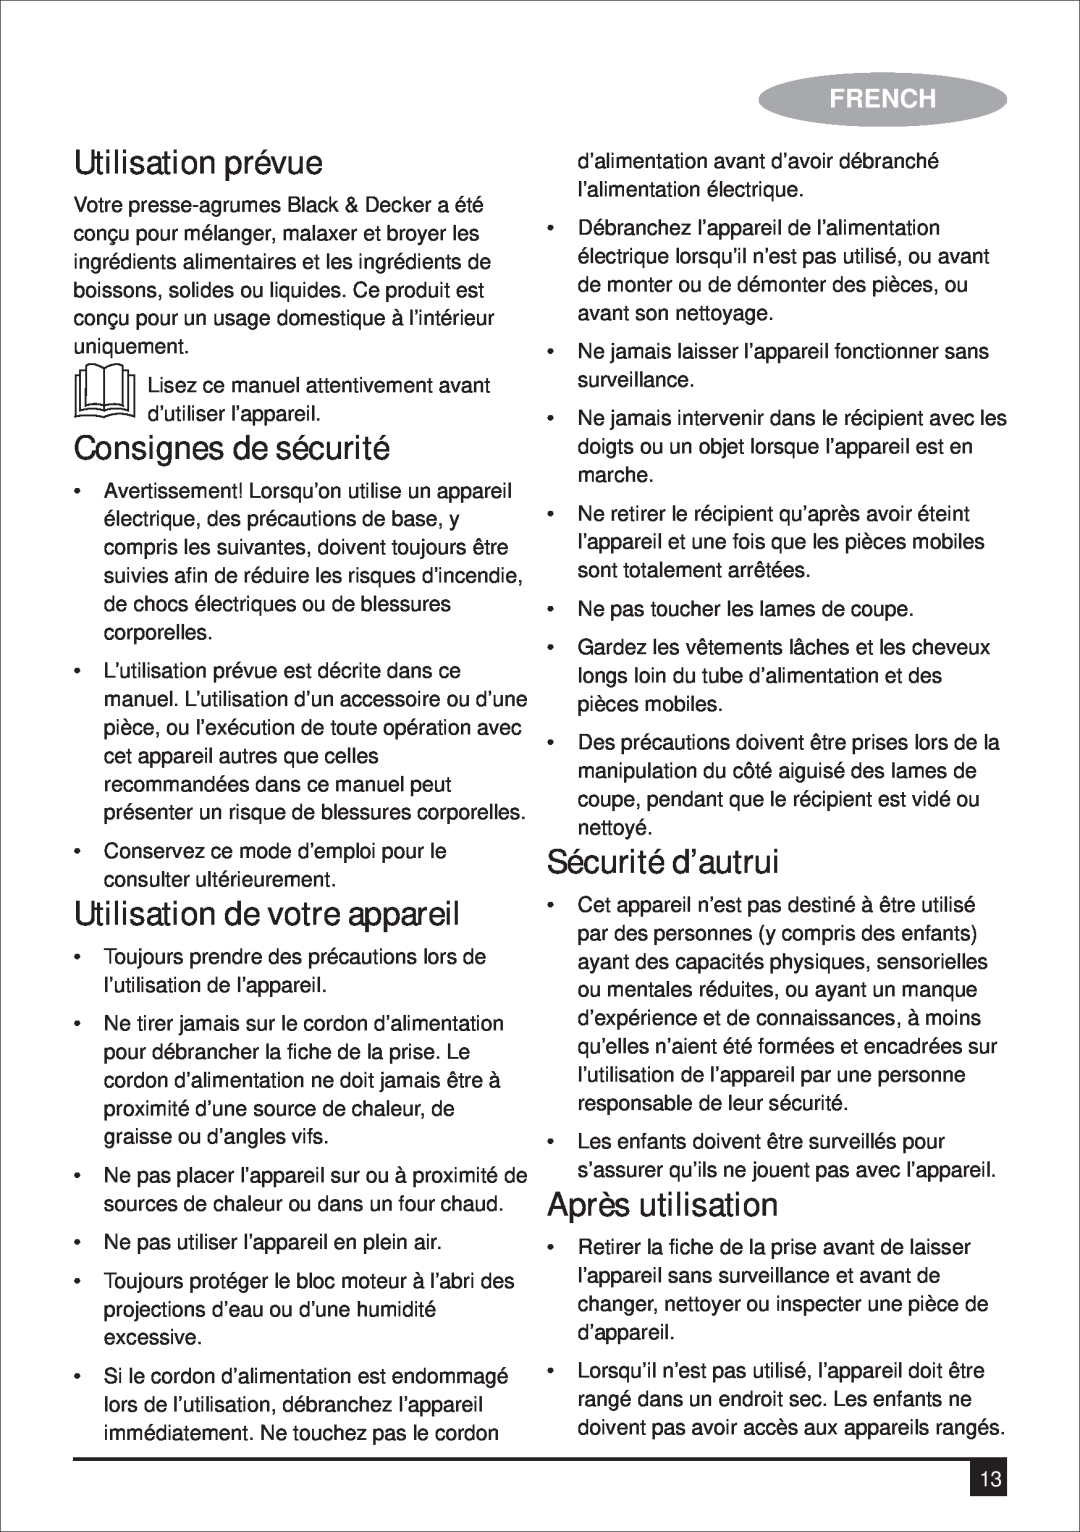 Black & Decker BX700G manual Utilisation prévue, Consignes de sécurité, Sécurité d’autrui, Après utilisation, French 